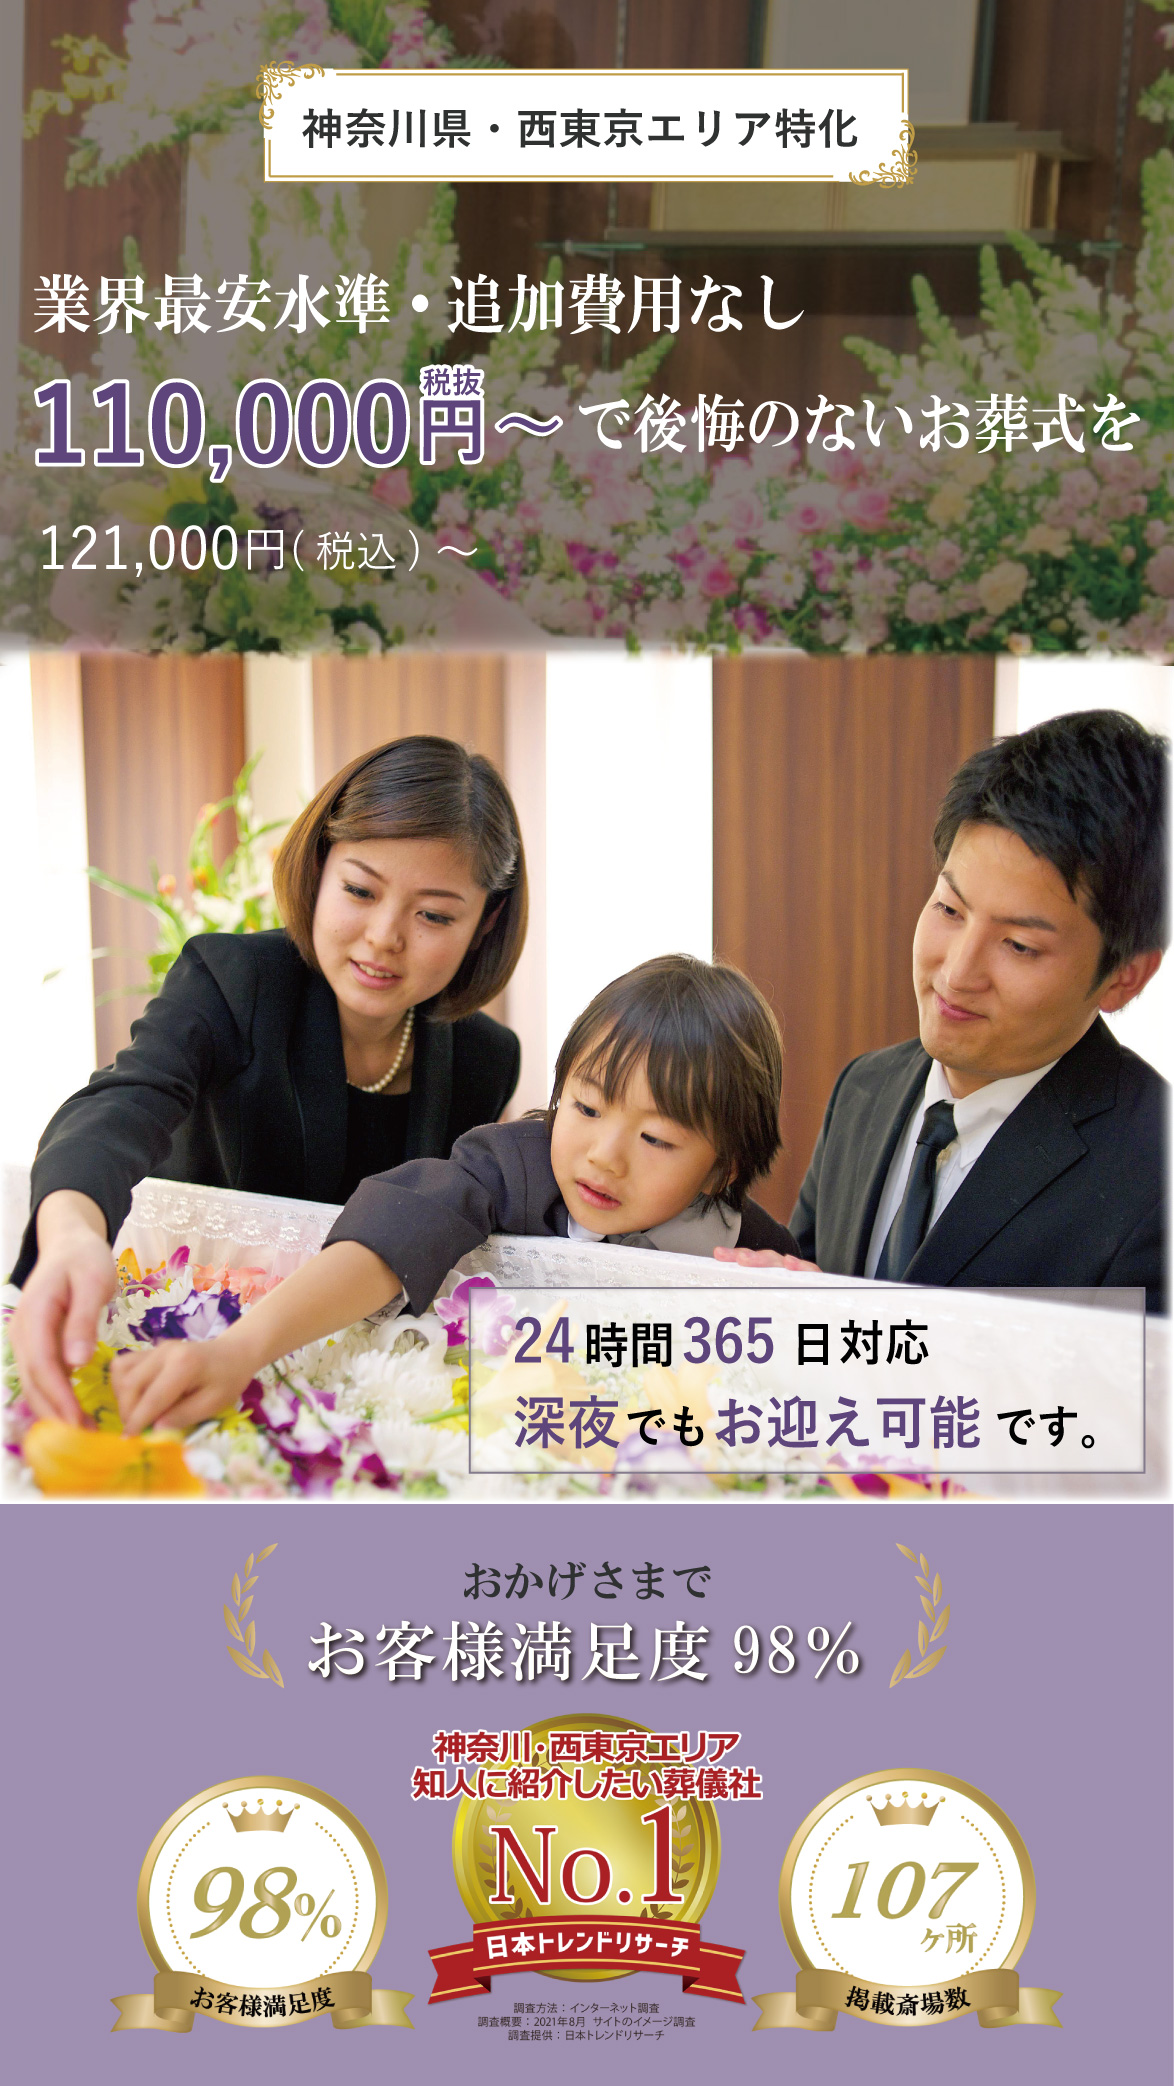 Somatchとは西東京・神奈川エリアで空いている式場・火葬場を“マッチングする唯一のサービス”